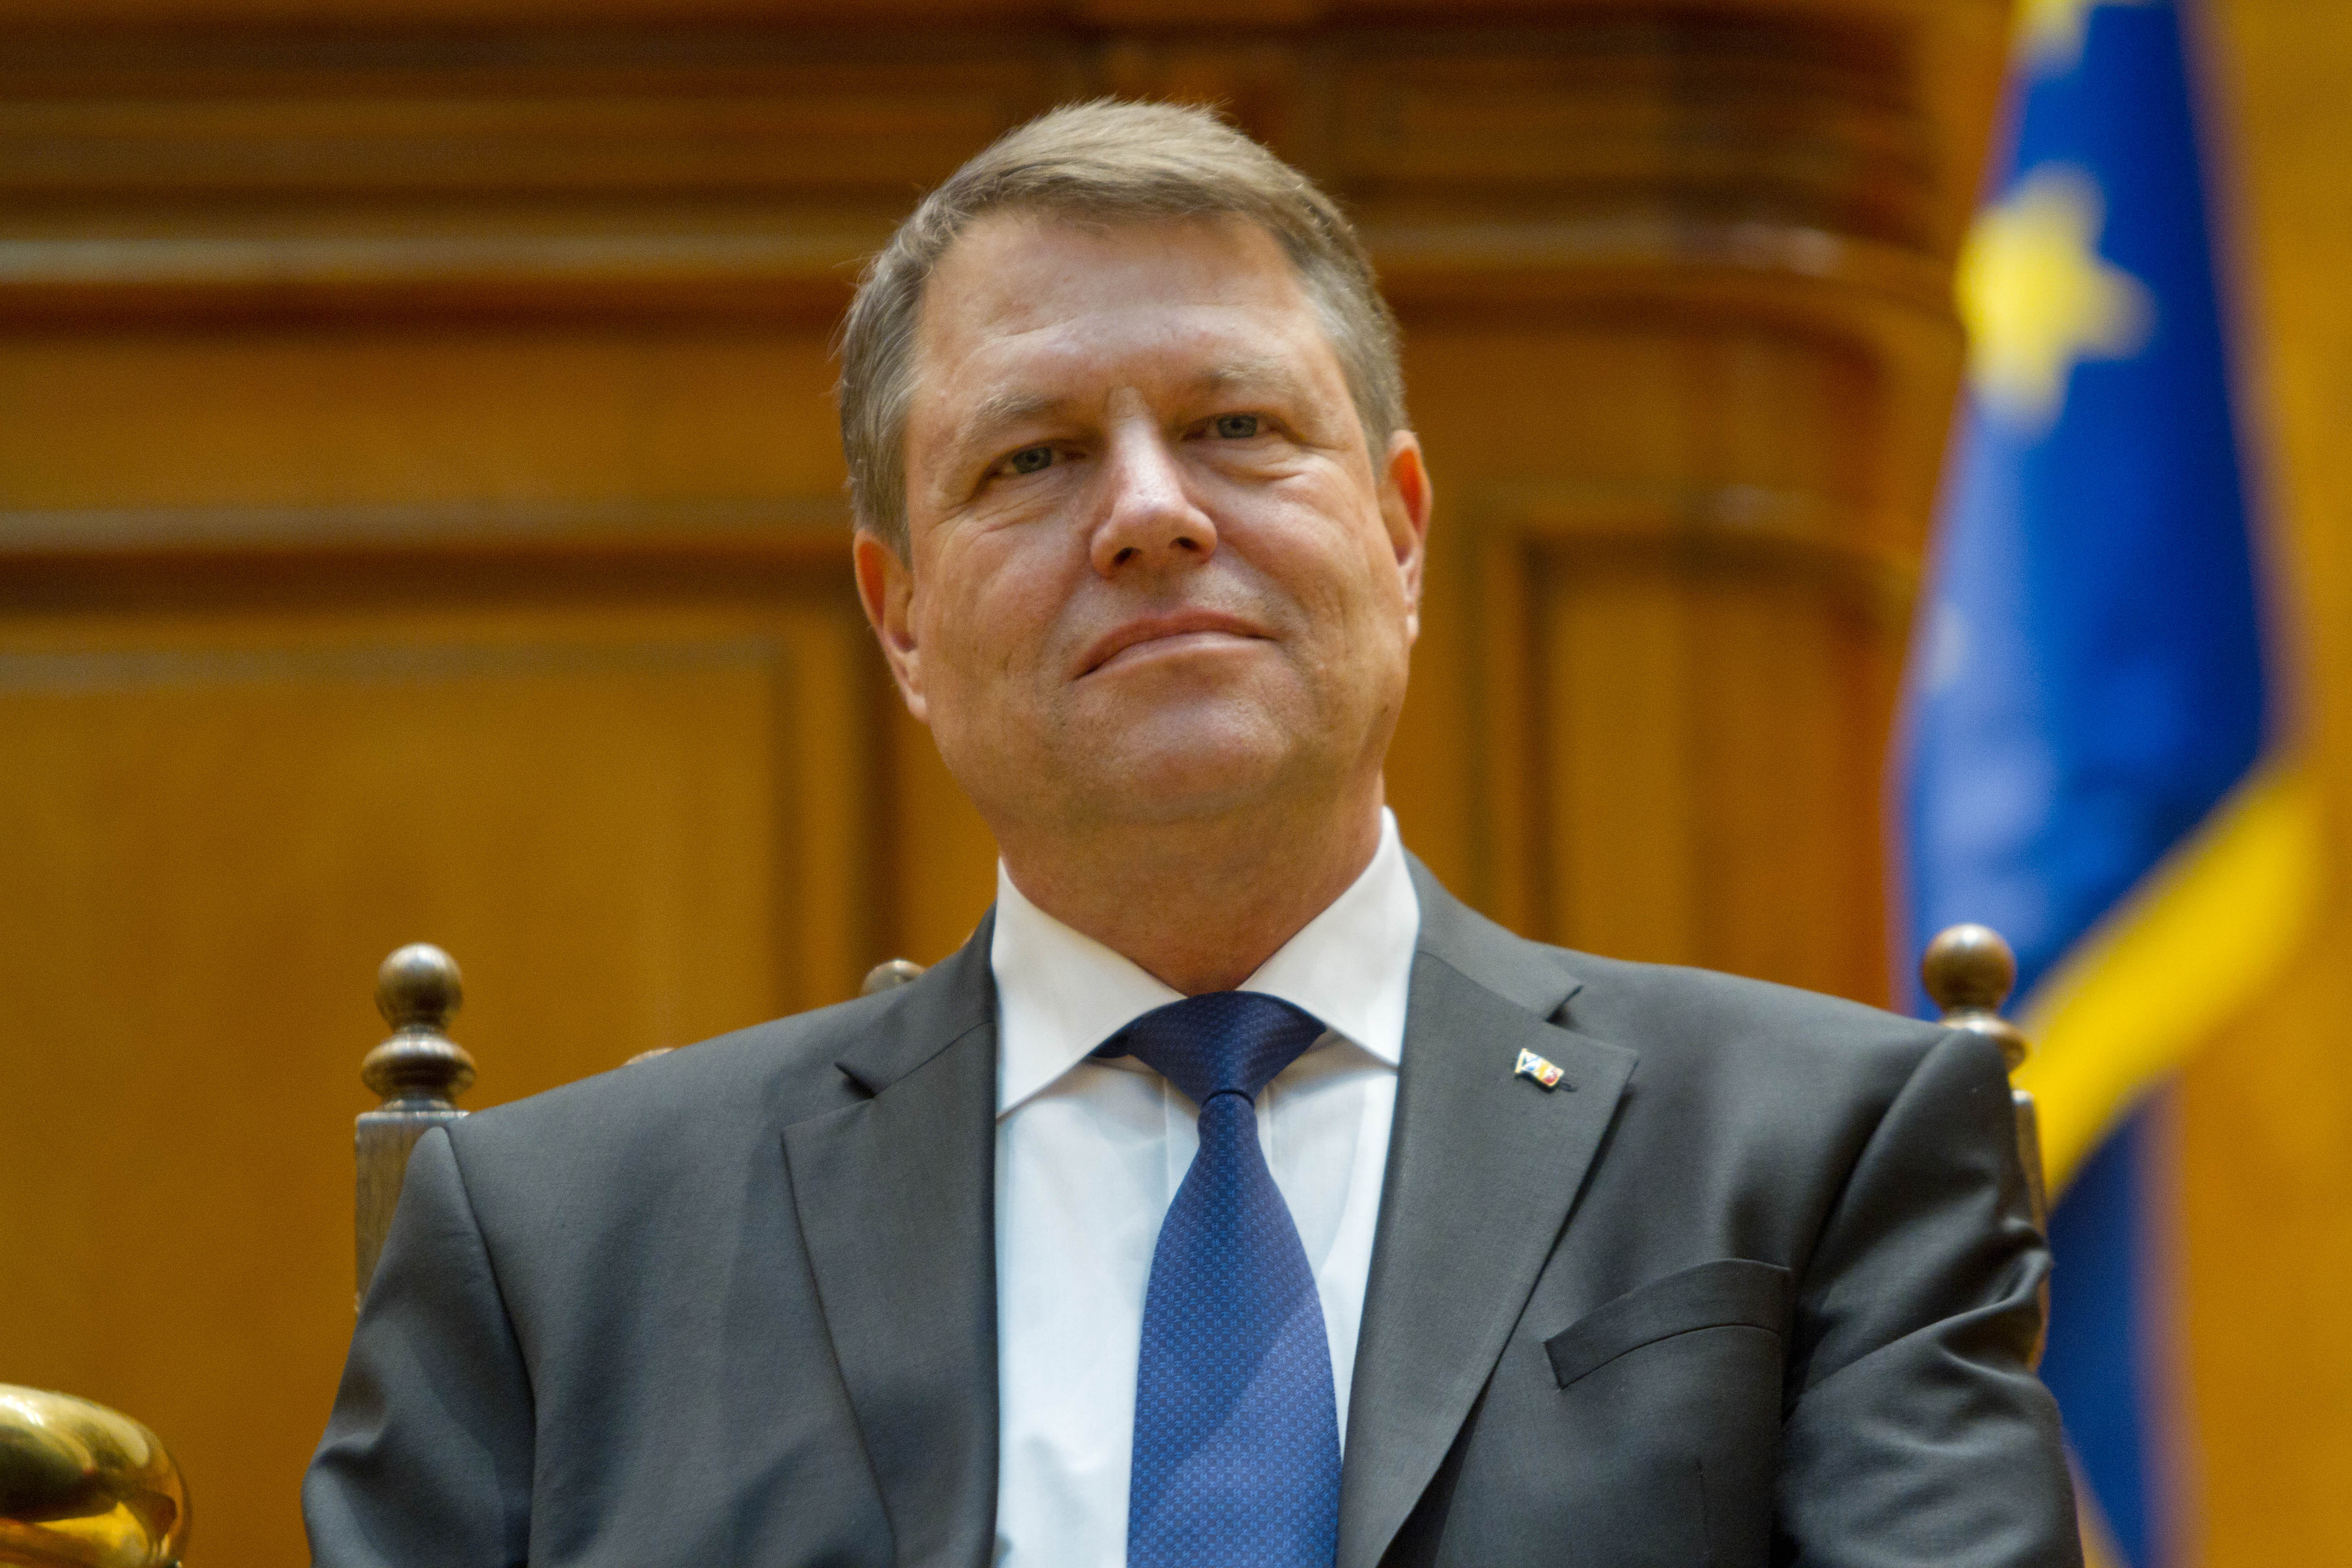 Preşedintele României, Klaus Iohannis: Mare parte dintre elevi termină şcoala analfabeţi funcţional. Nu pot înţelege un text